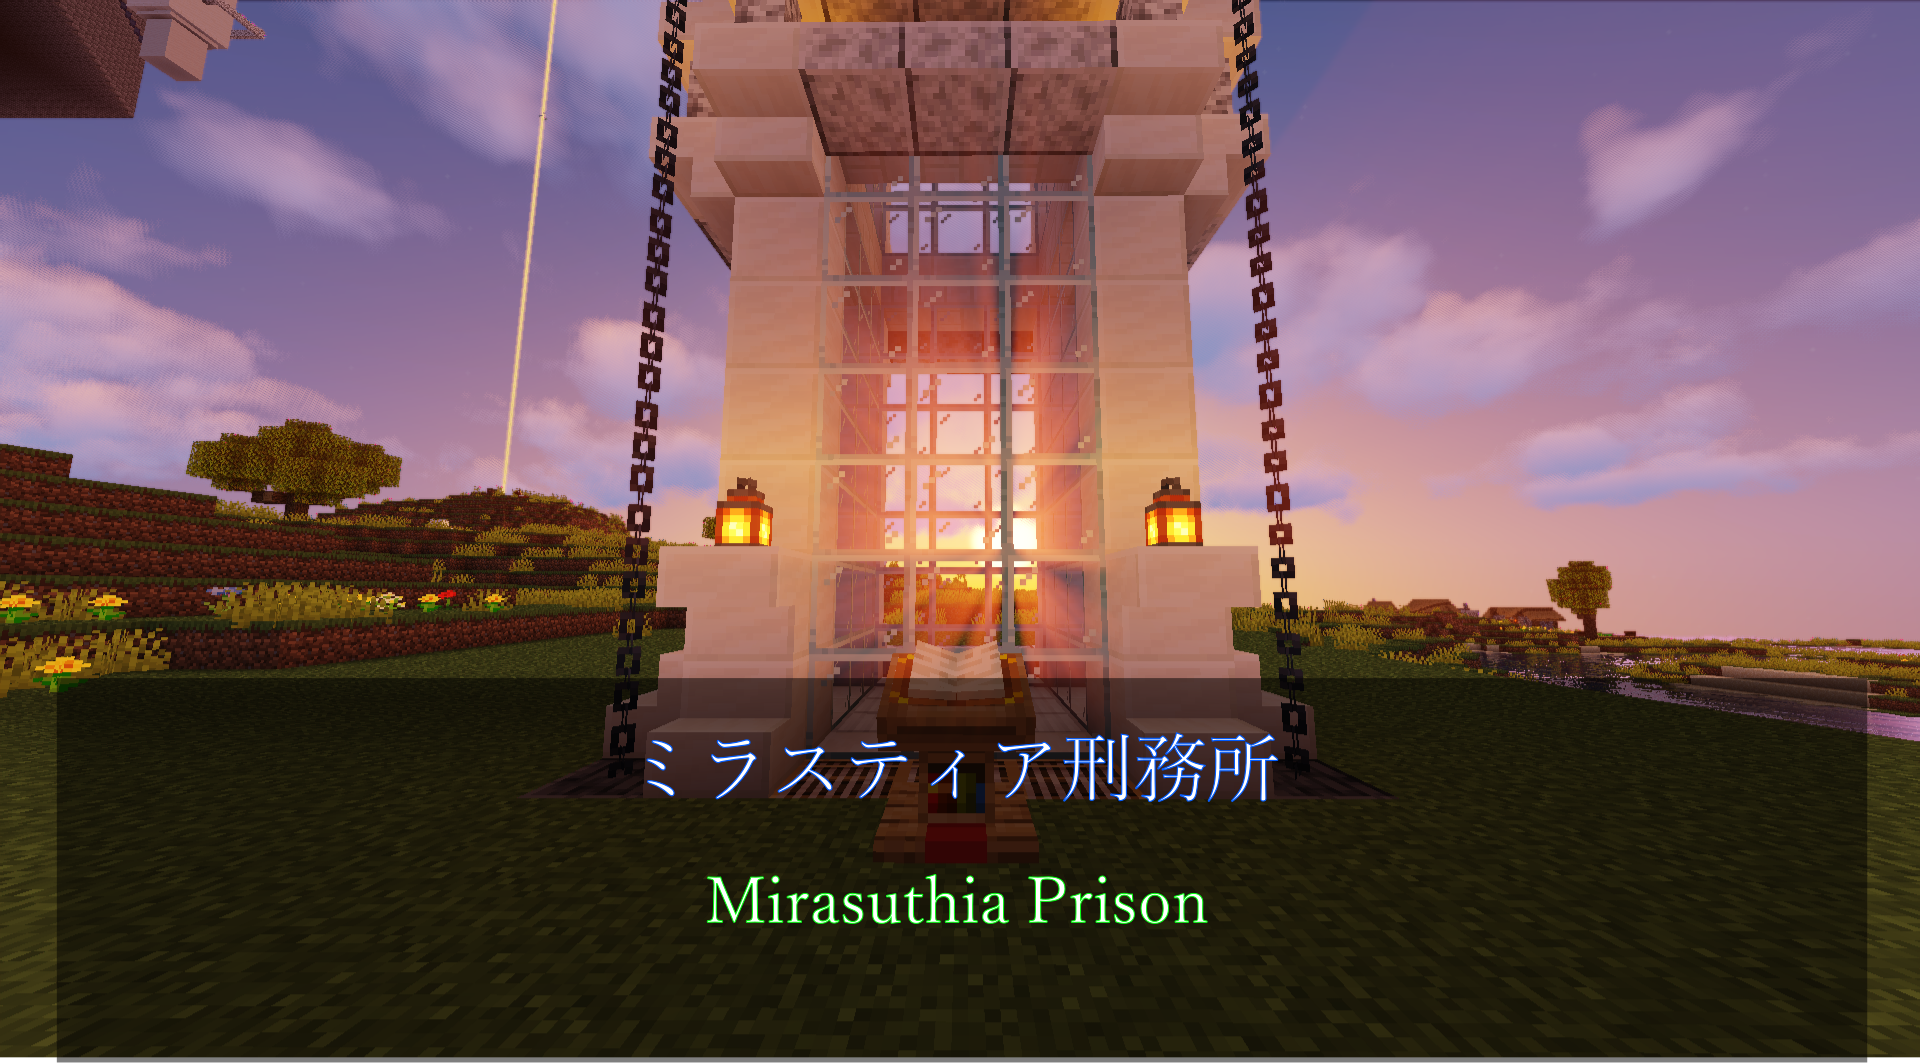 Prison_Logo-573e49bd